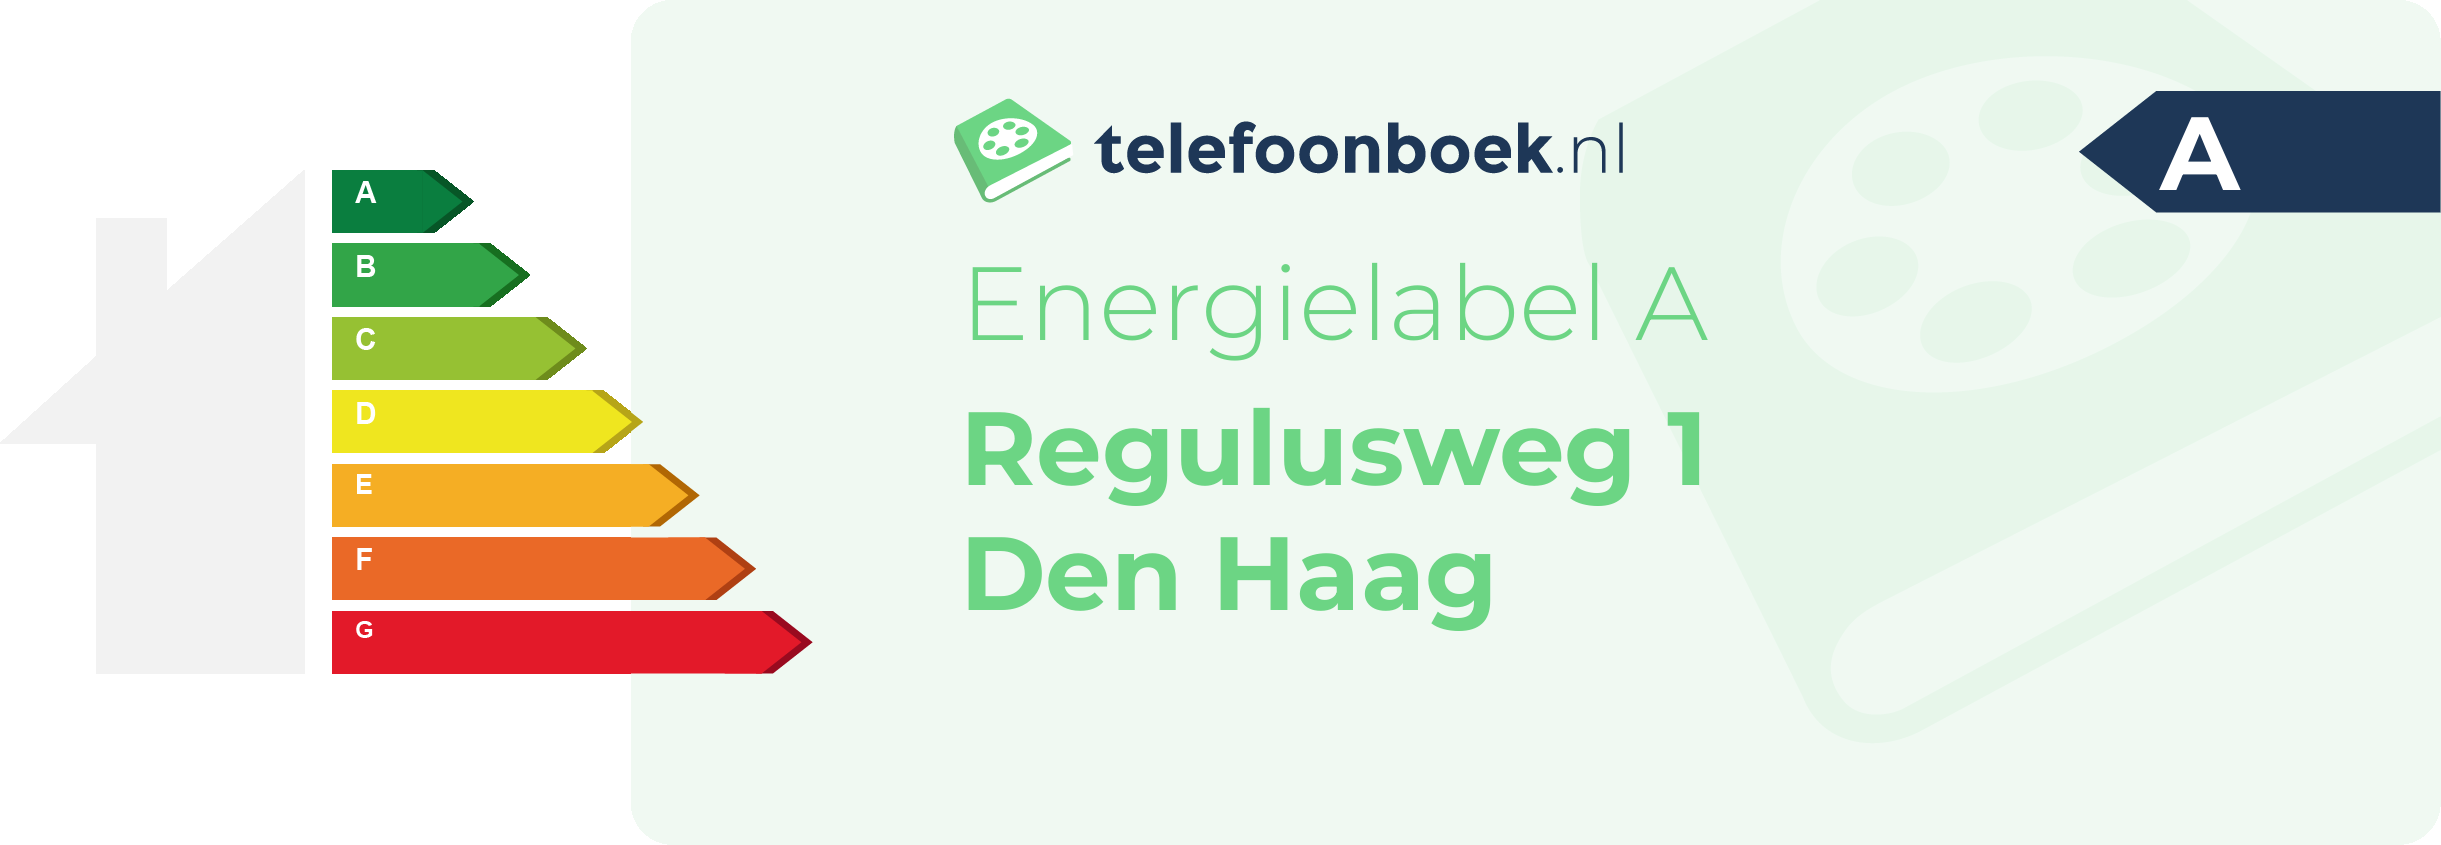 Energielabel Regulusweg 1 Den Haag